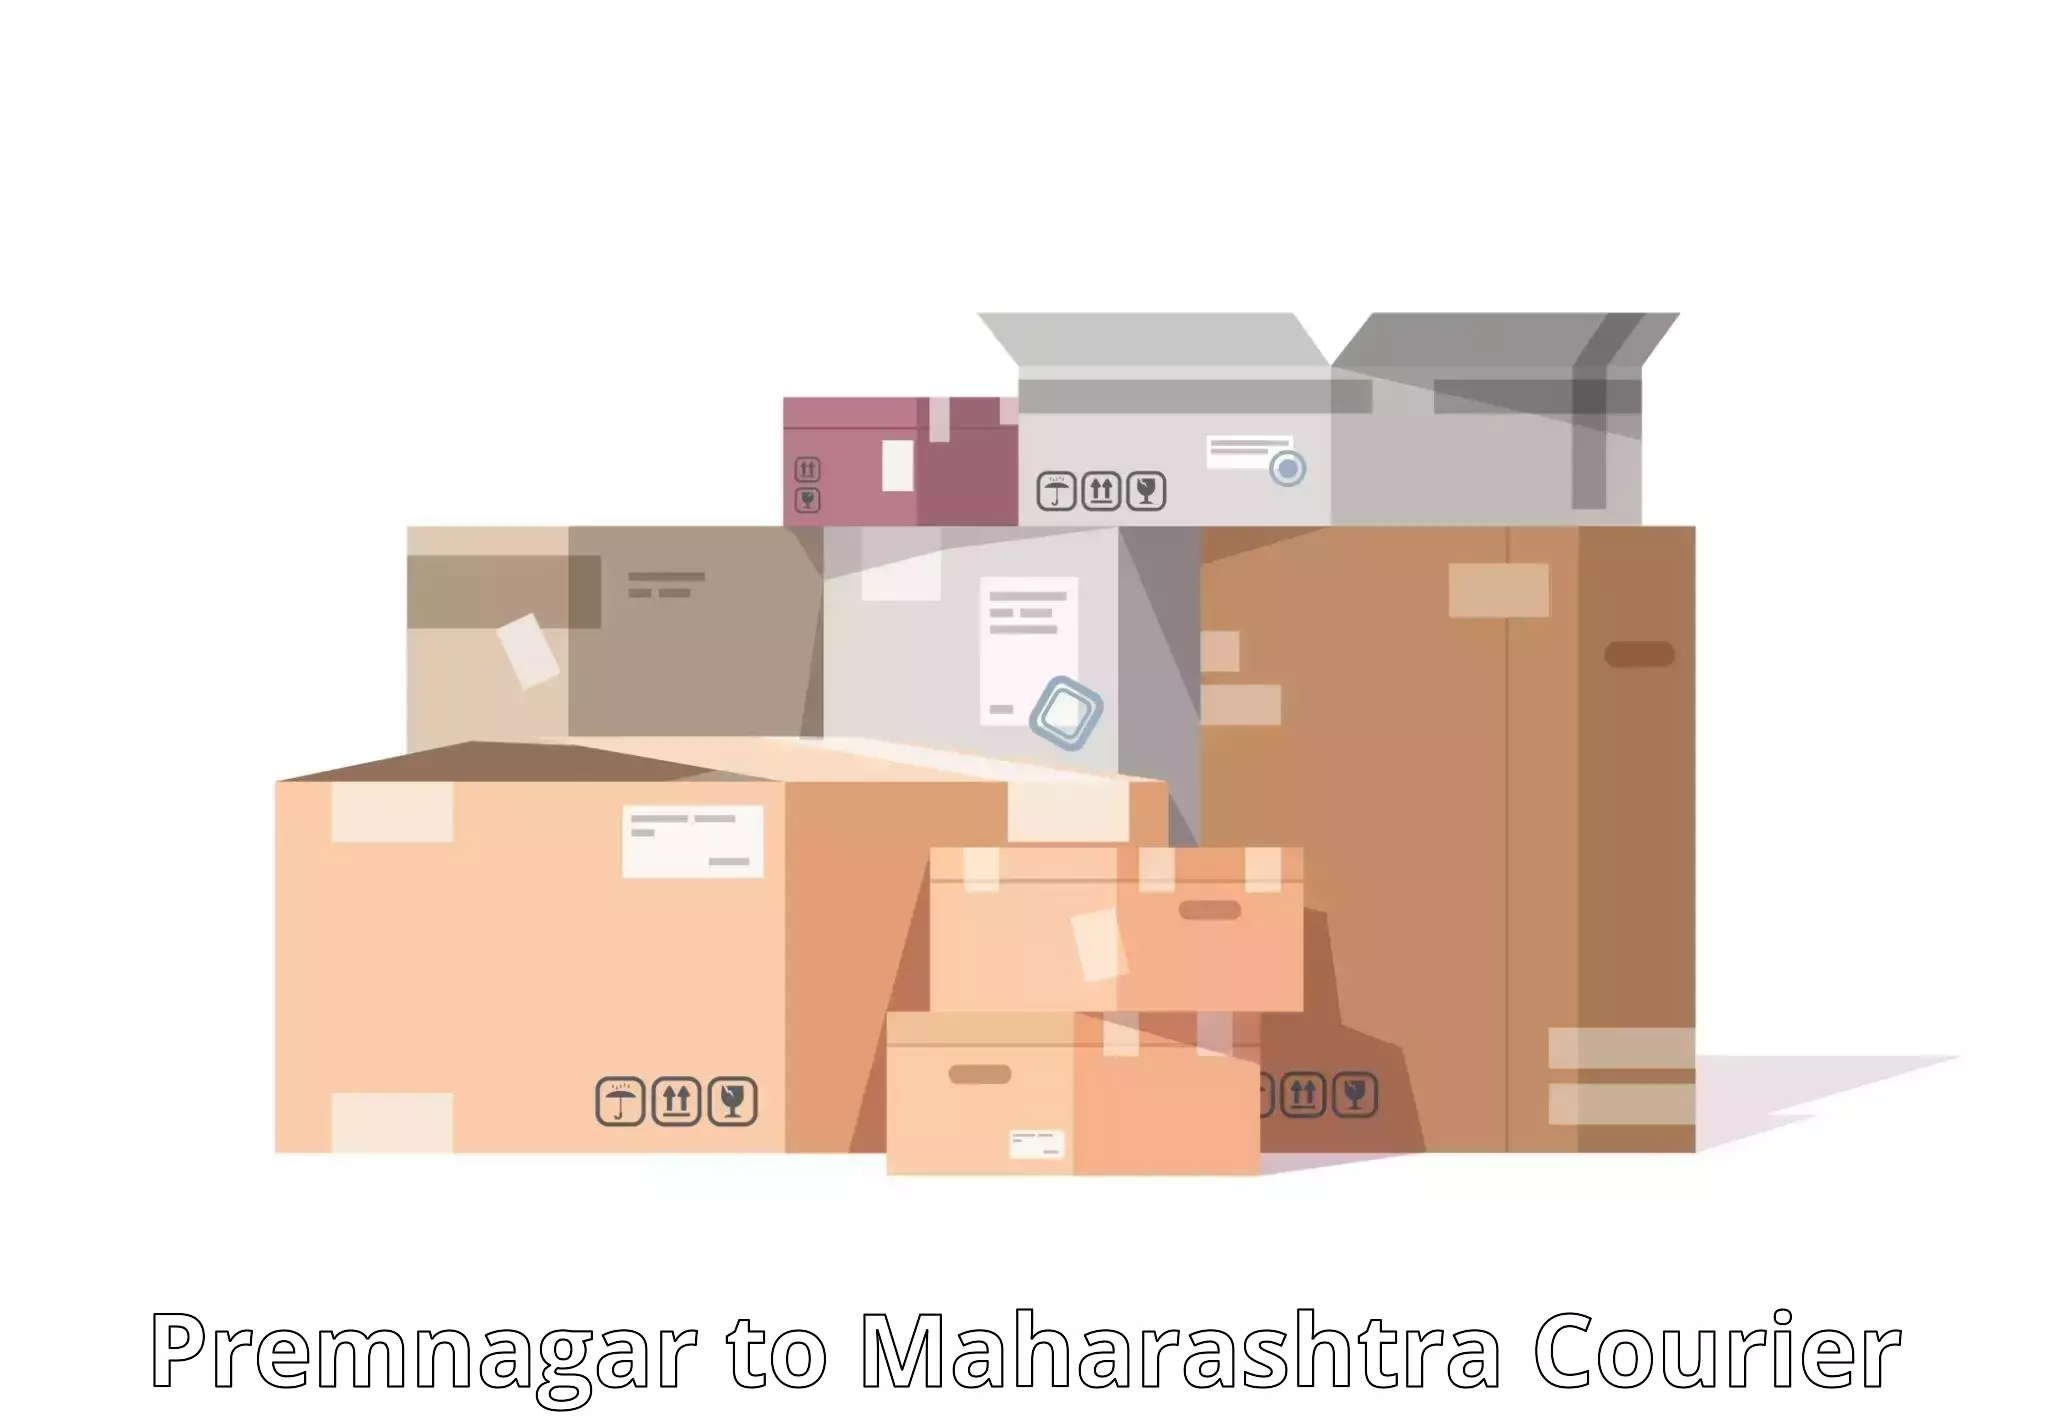 Package delivery network Premnagar to Buldhana